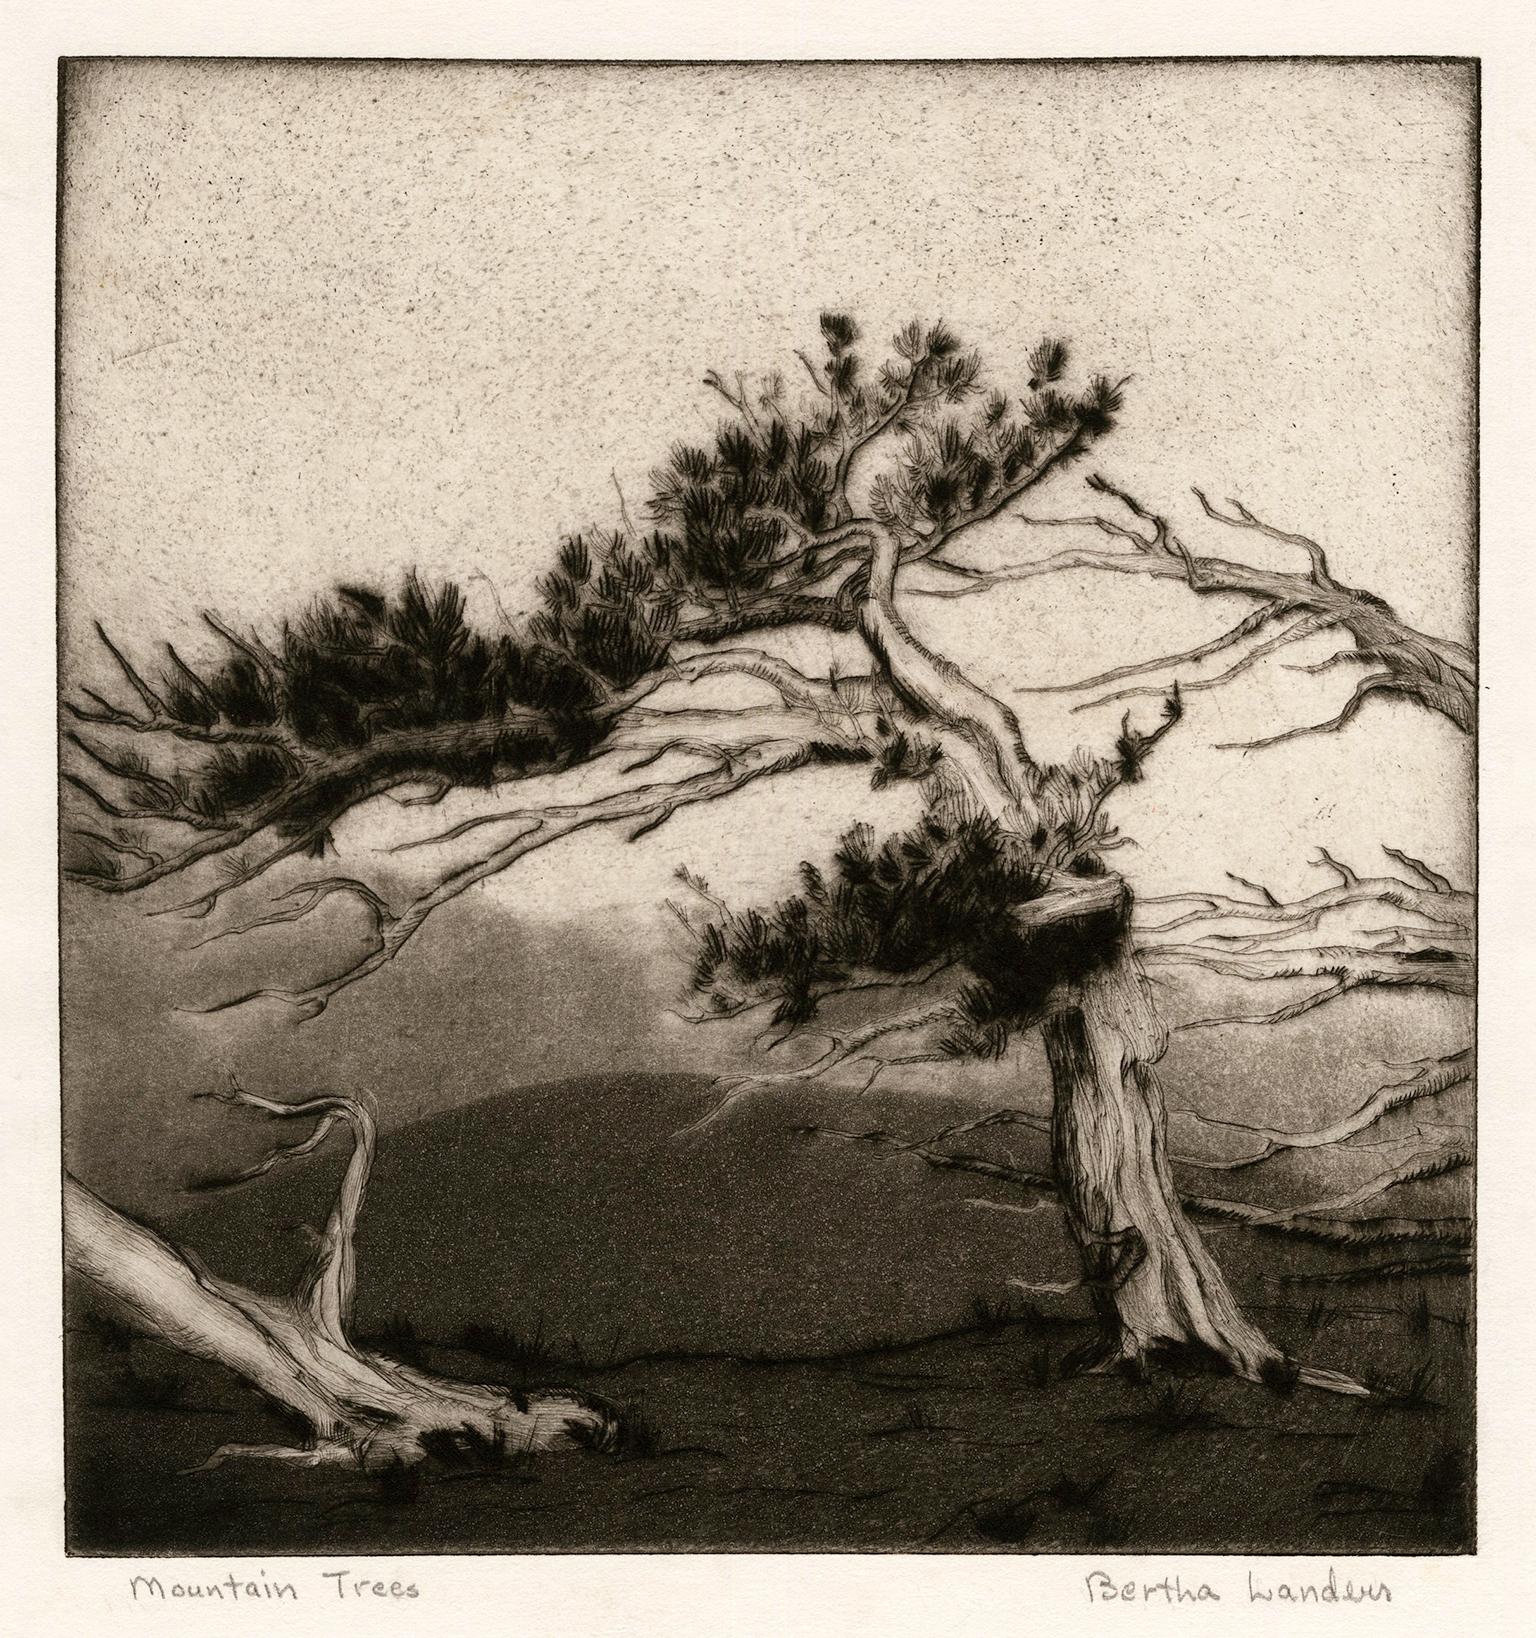 Bertha Landers Landscape Print – Mountain Trees" - Südwestlicher Regionalismus der 1930er Jahre